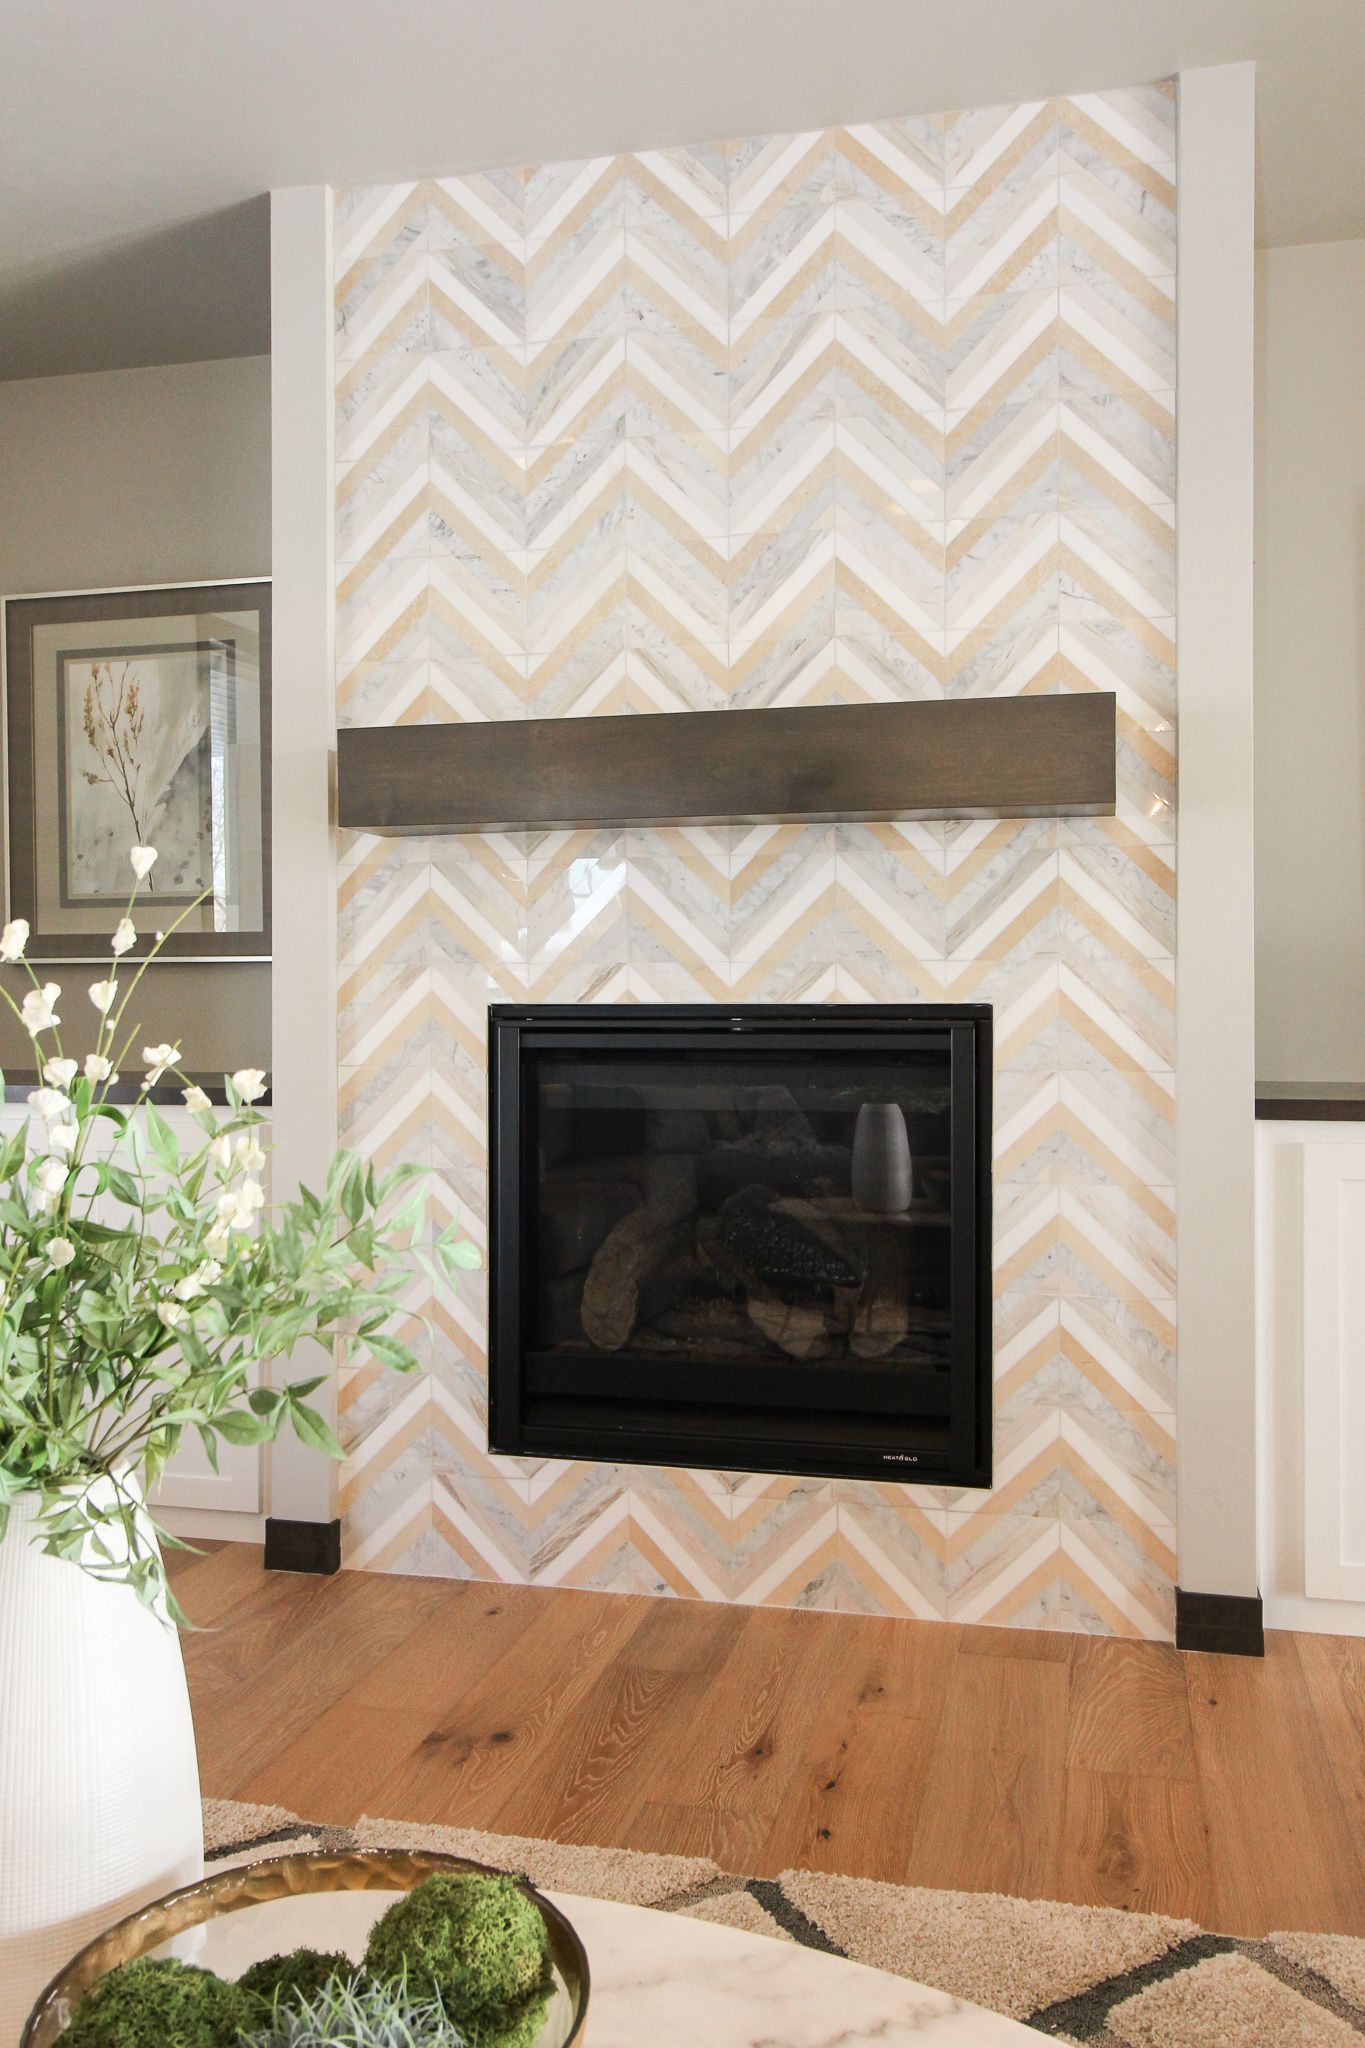 Tile Fireplace in Chevron Pattern